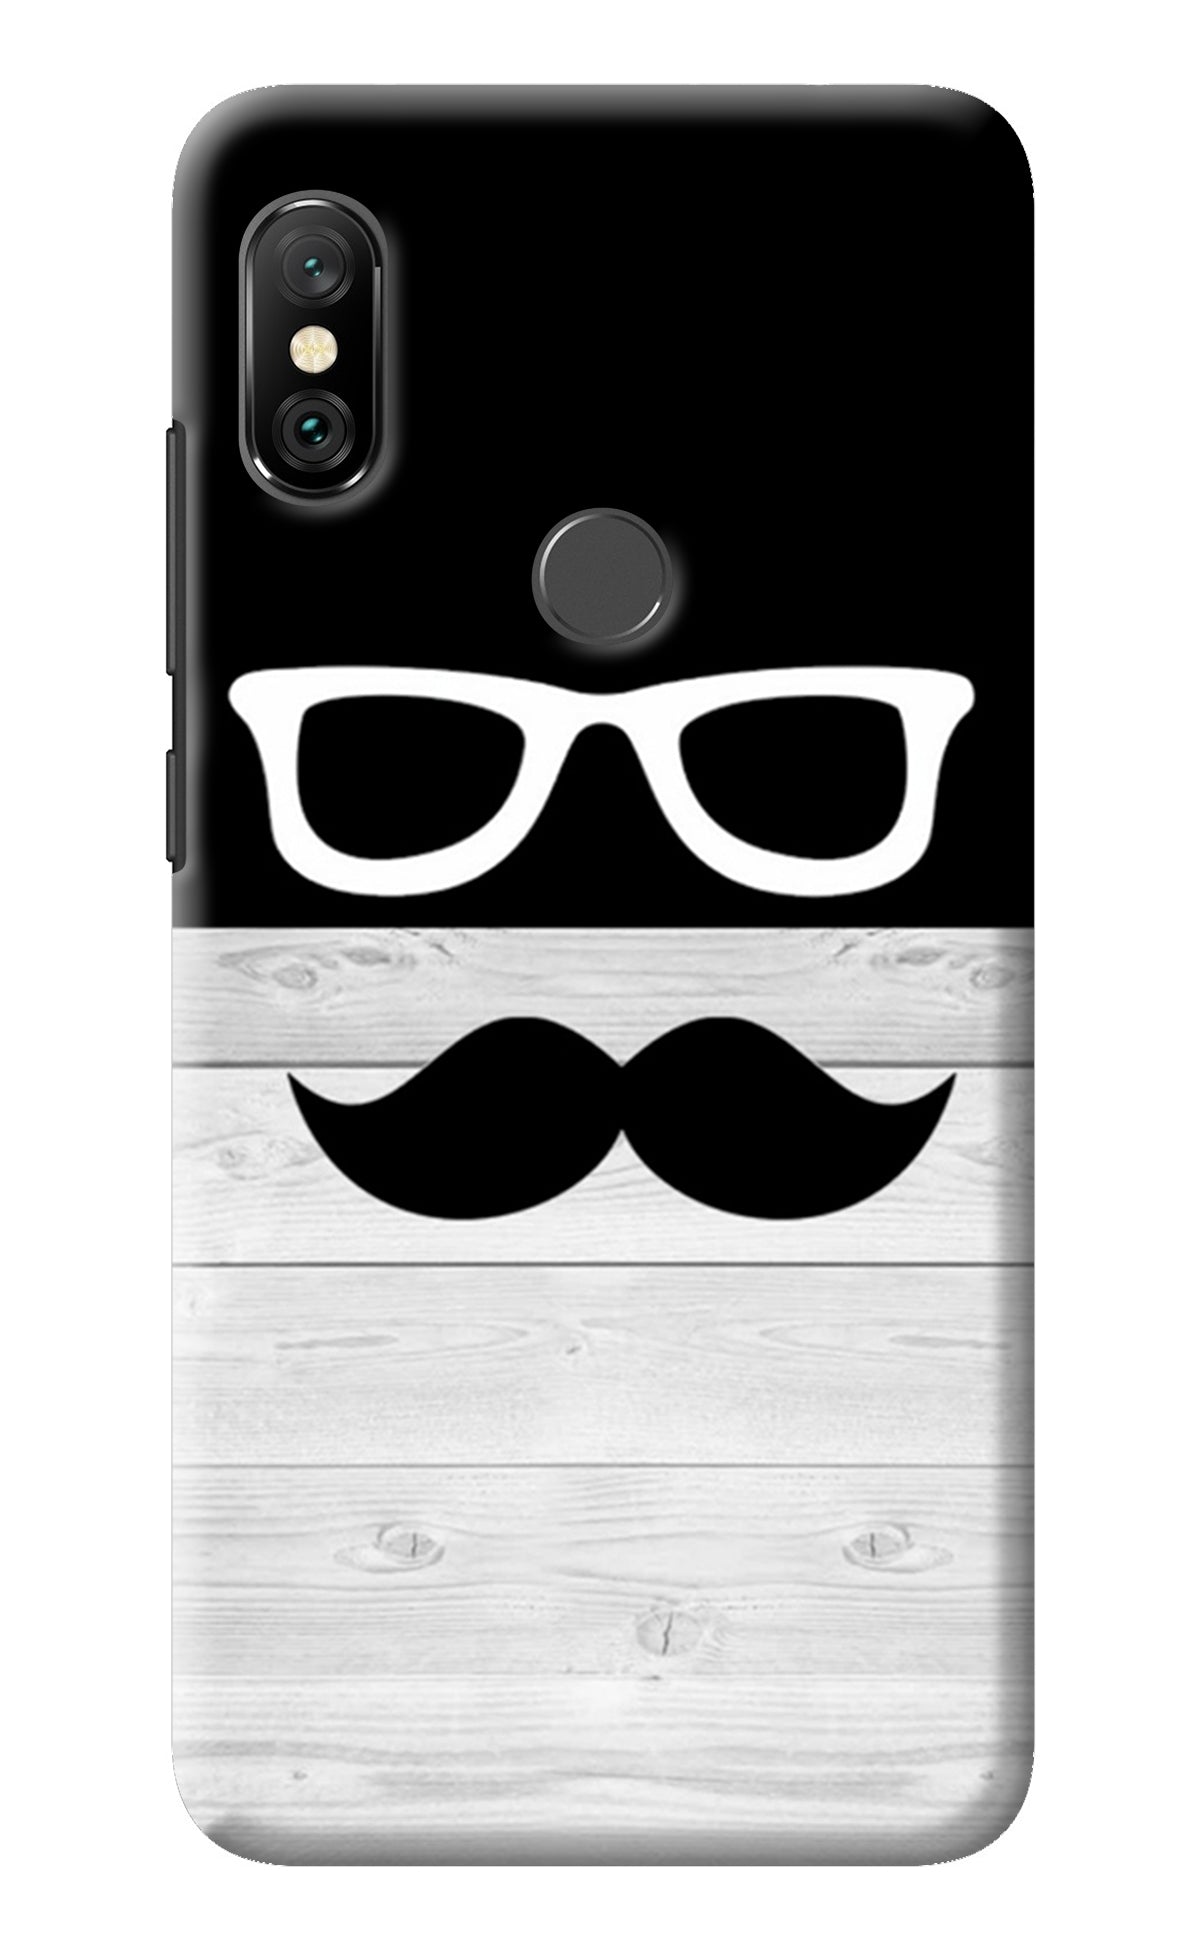 Mustache Redmi Note 6 Pro Back Cover